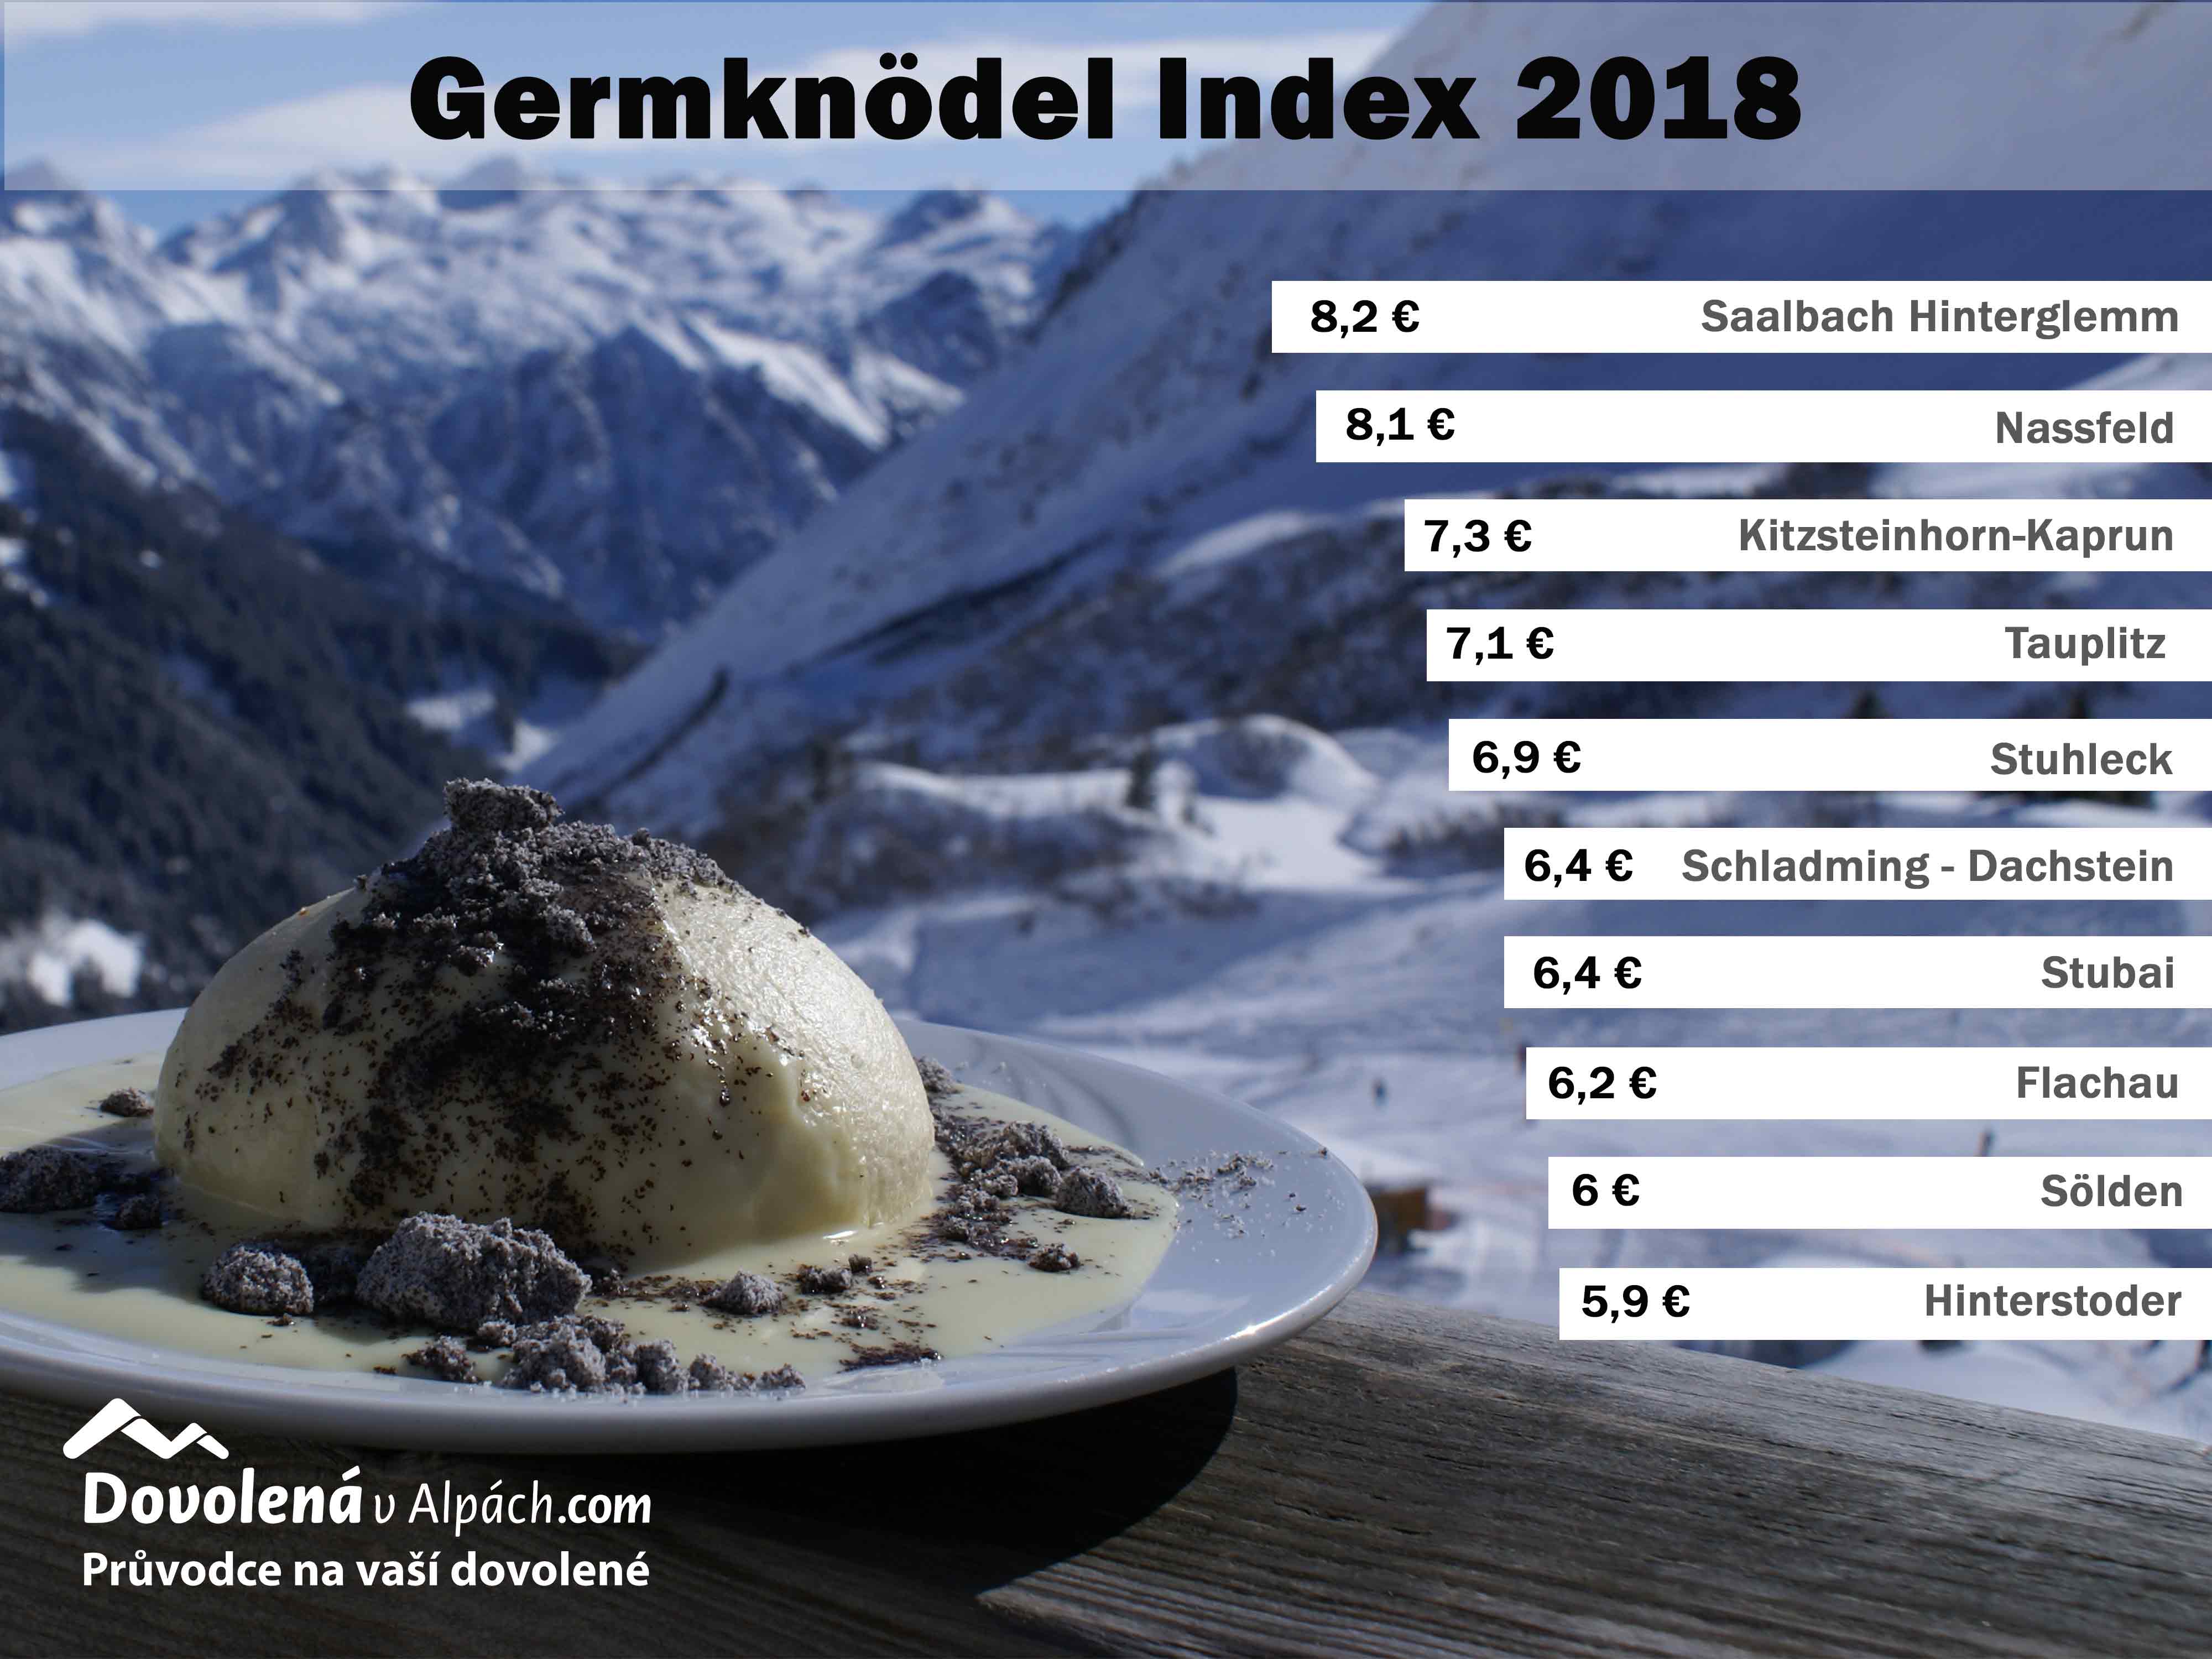 Germknodel Index 2018